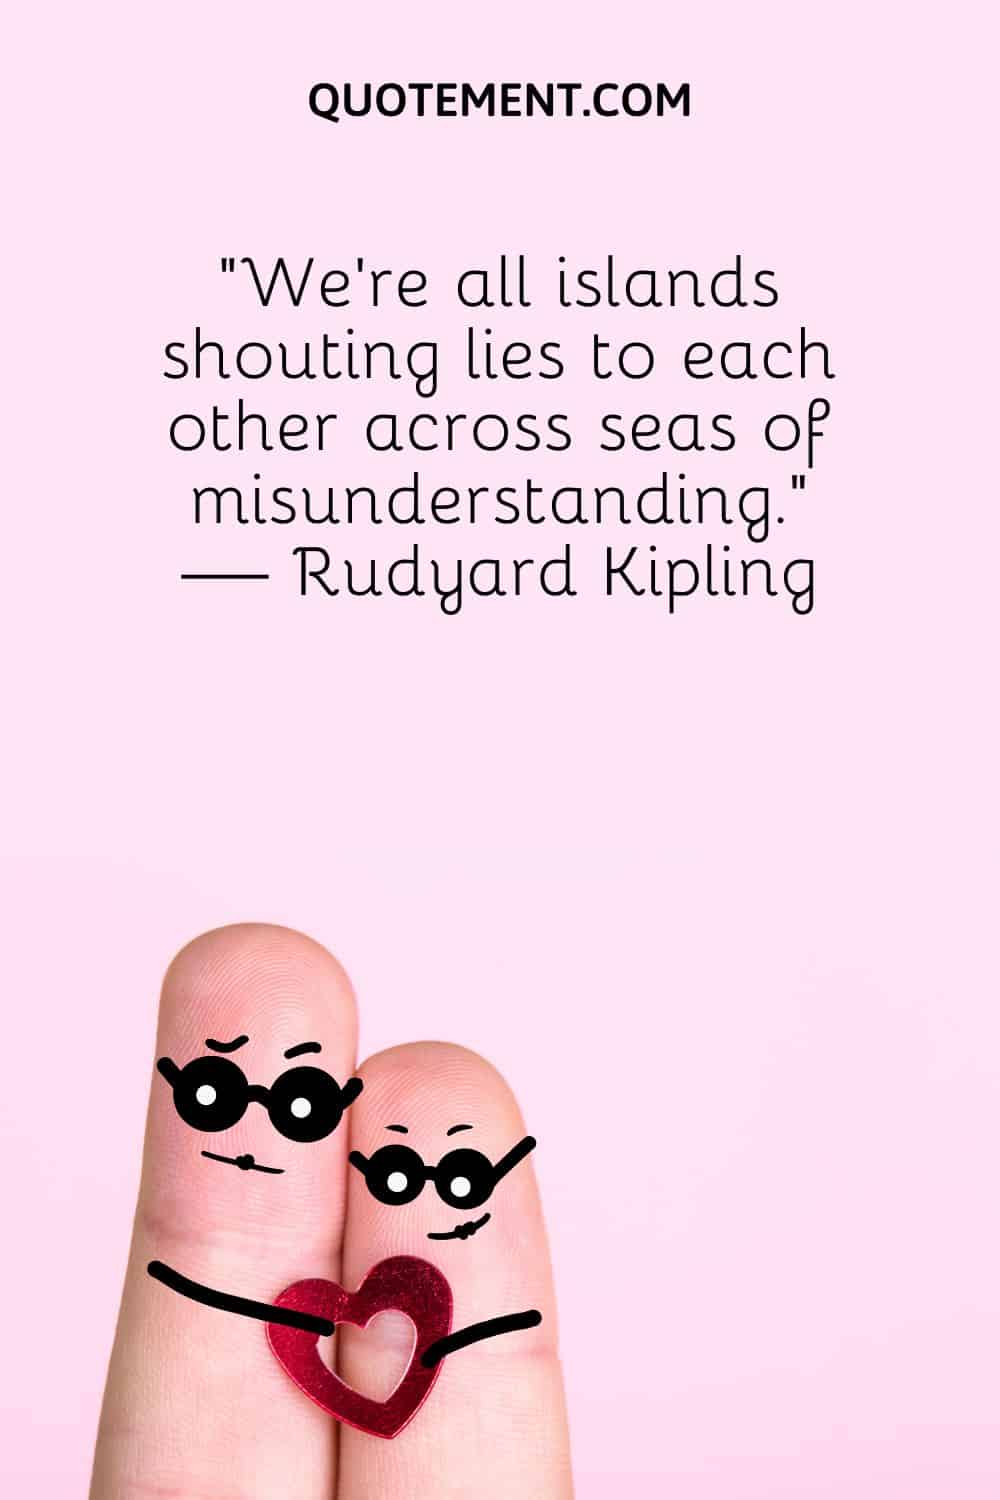 “We’re all islands shouting lies to each other across seas of misunderstanding.” — Rudyard Kipling